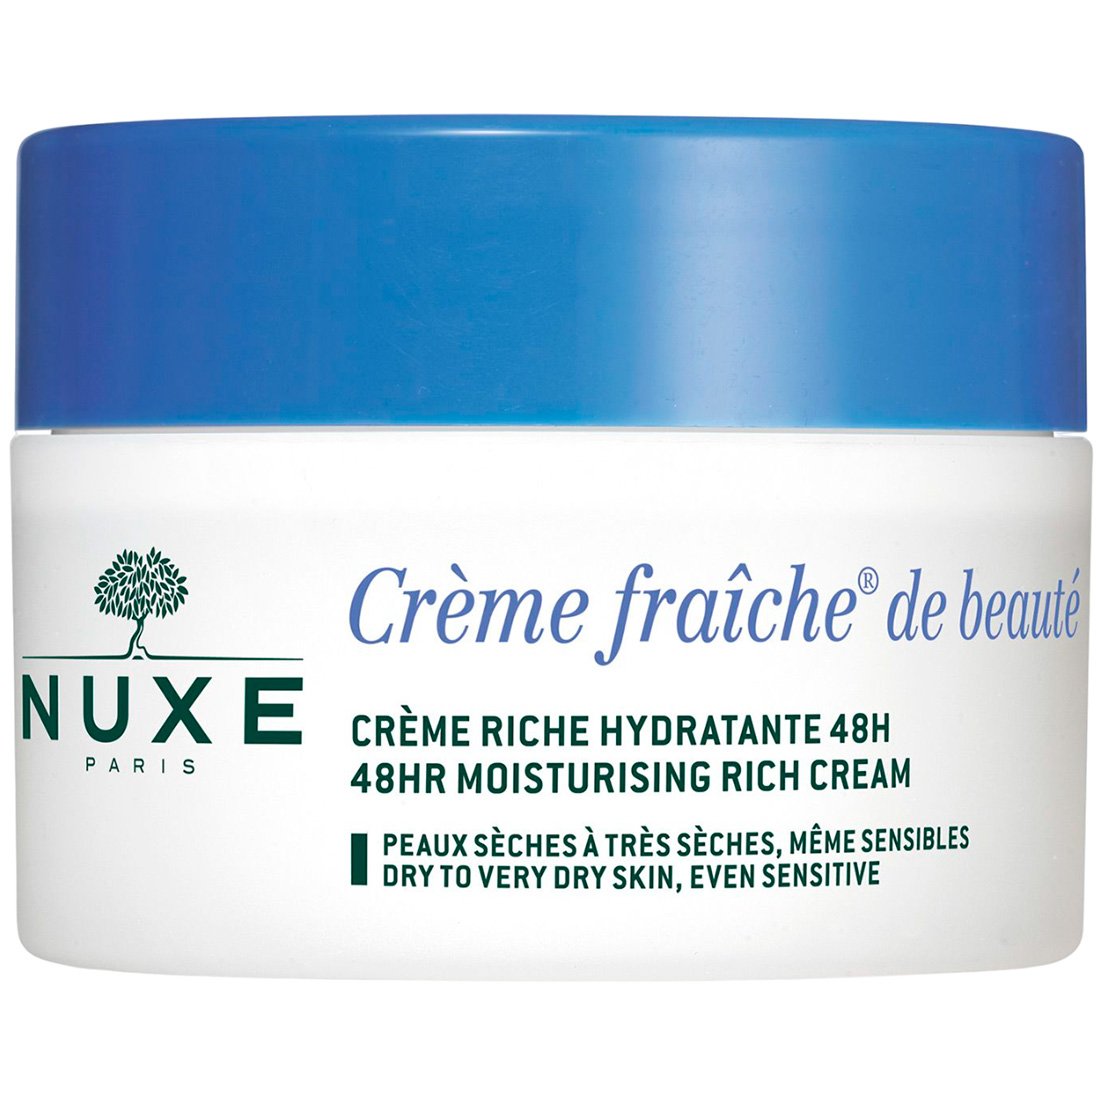 Увлажняющий крем-фреш для лица Nuxe Creme fraiche de beaute 48 часов, для сухой кожи, 50 мл - фото 1